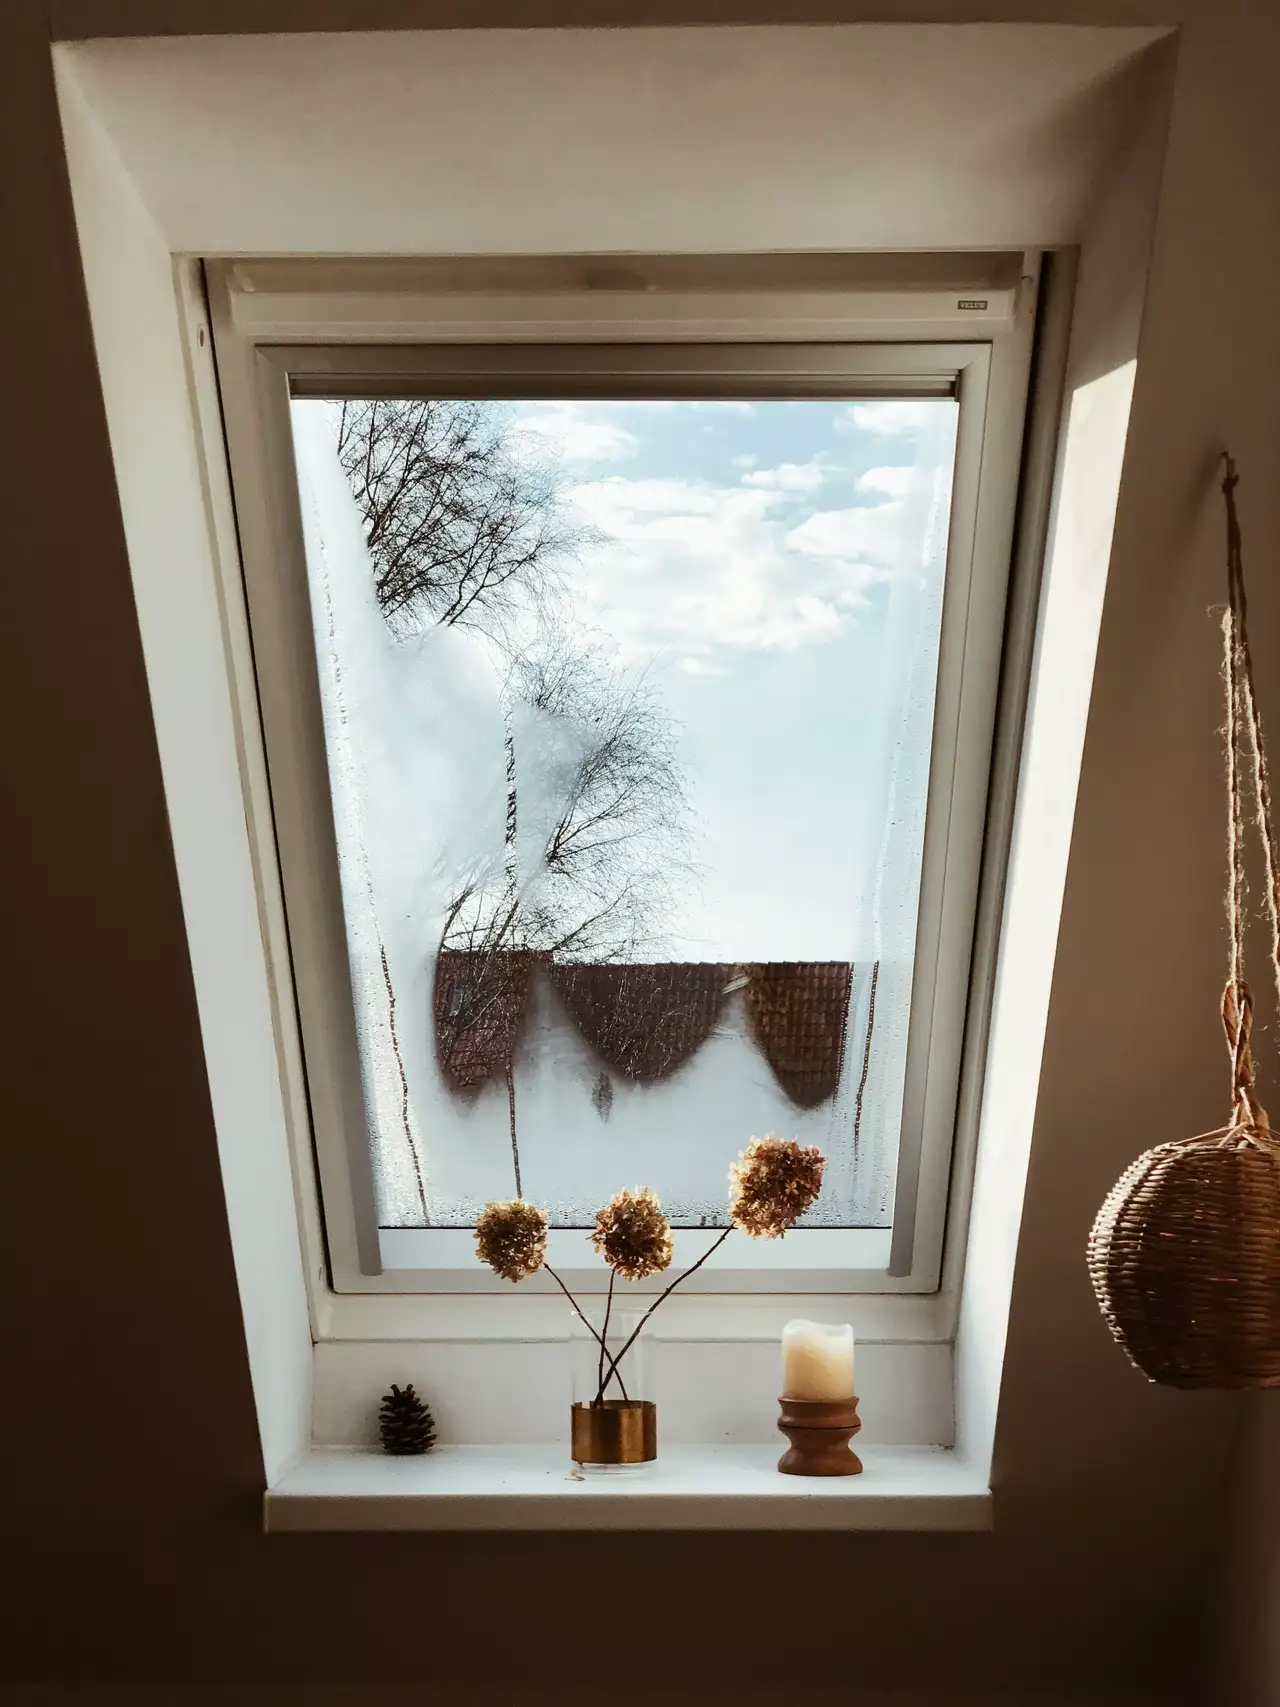 VELUX Dachflächenfenster im Dachboden mit dekorativen Gegenständen auf der Fensterbank, mit Blick auf einen ruhigen Himmel.